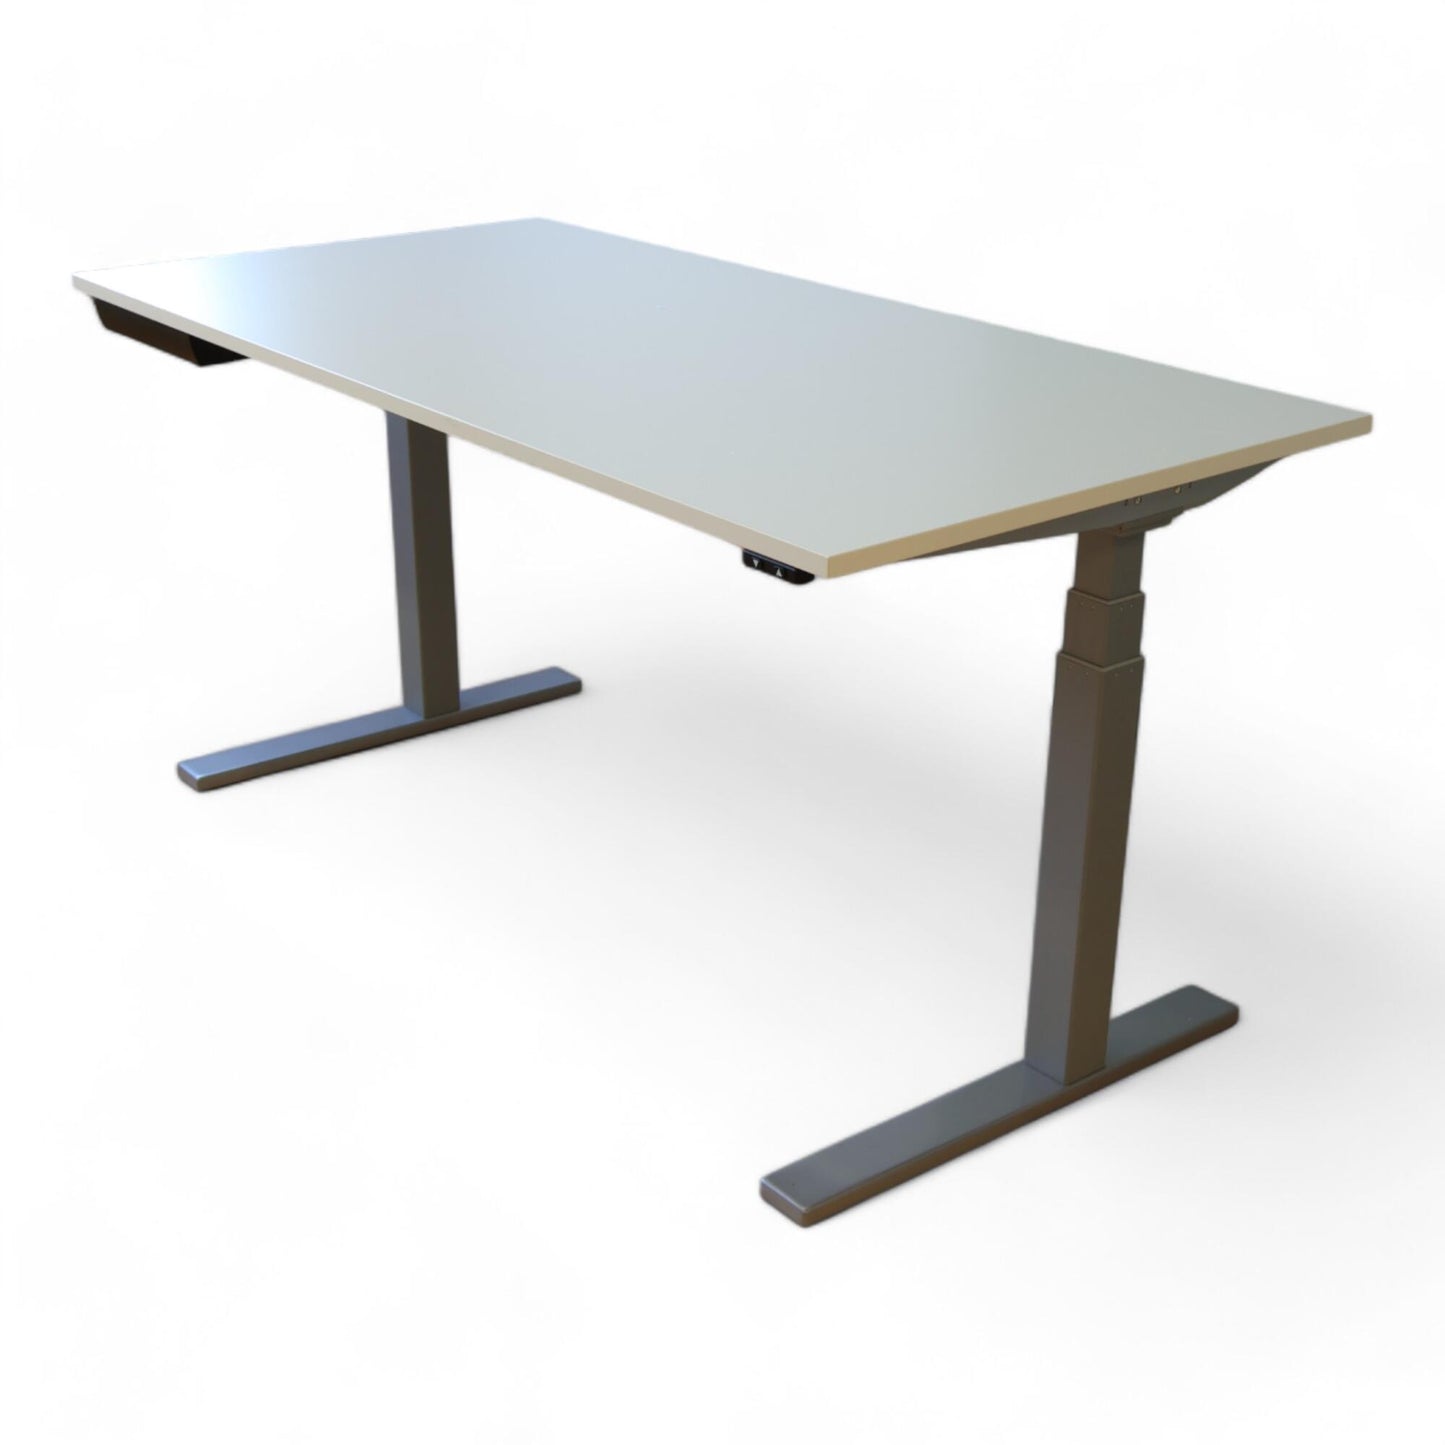 Kvalitetssikret | LINAK hev- og senkeskrivebord i hvit og grå